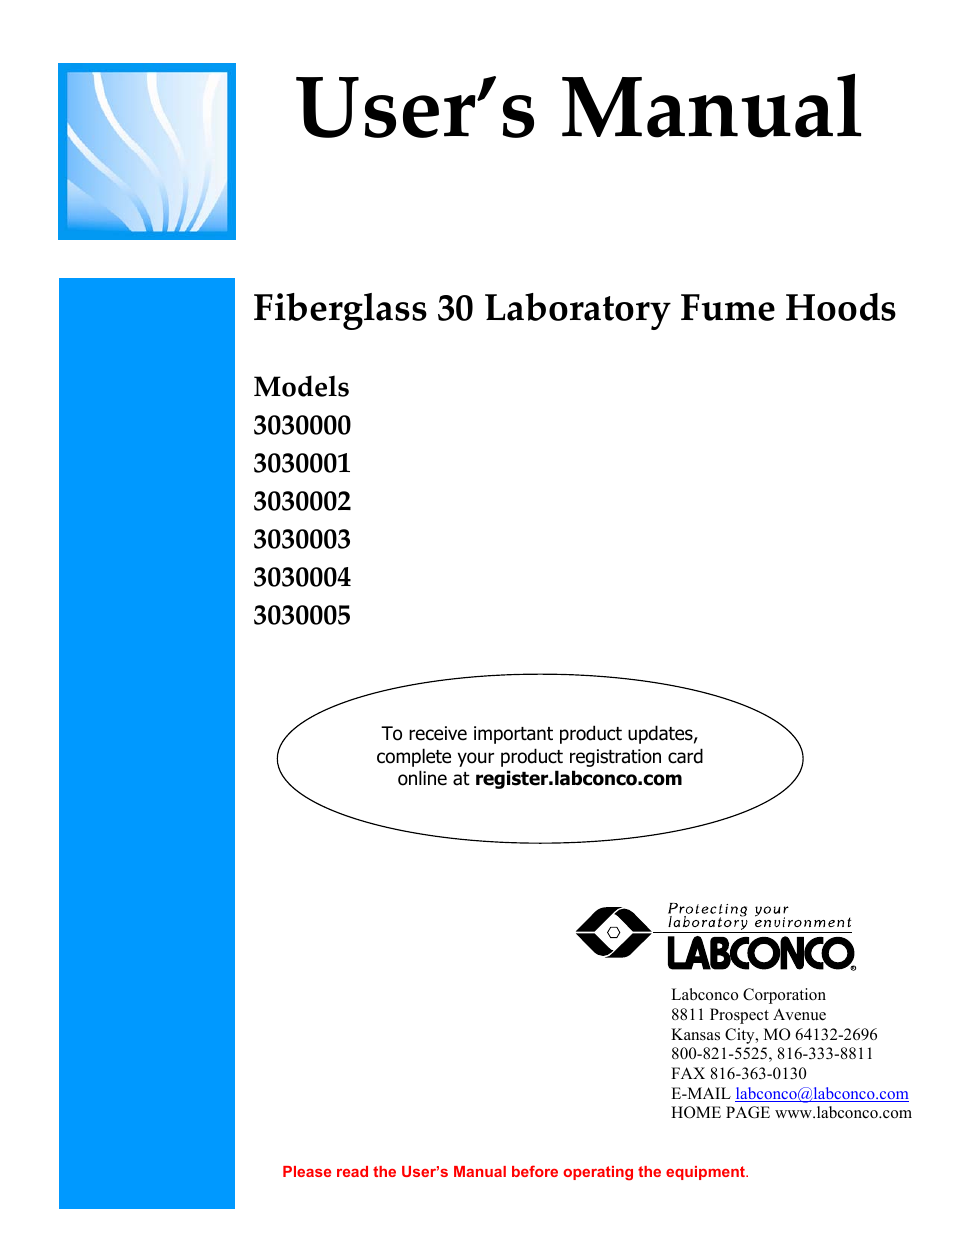 Fiberglass 30 Laboratory Fume Hoods 3030004